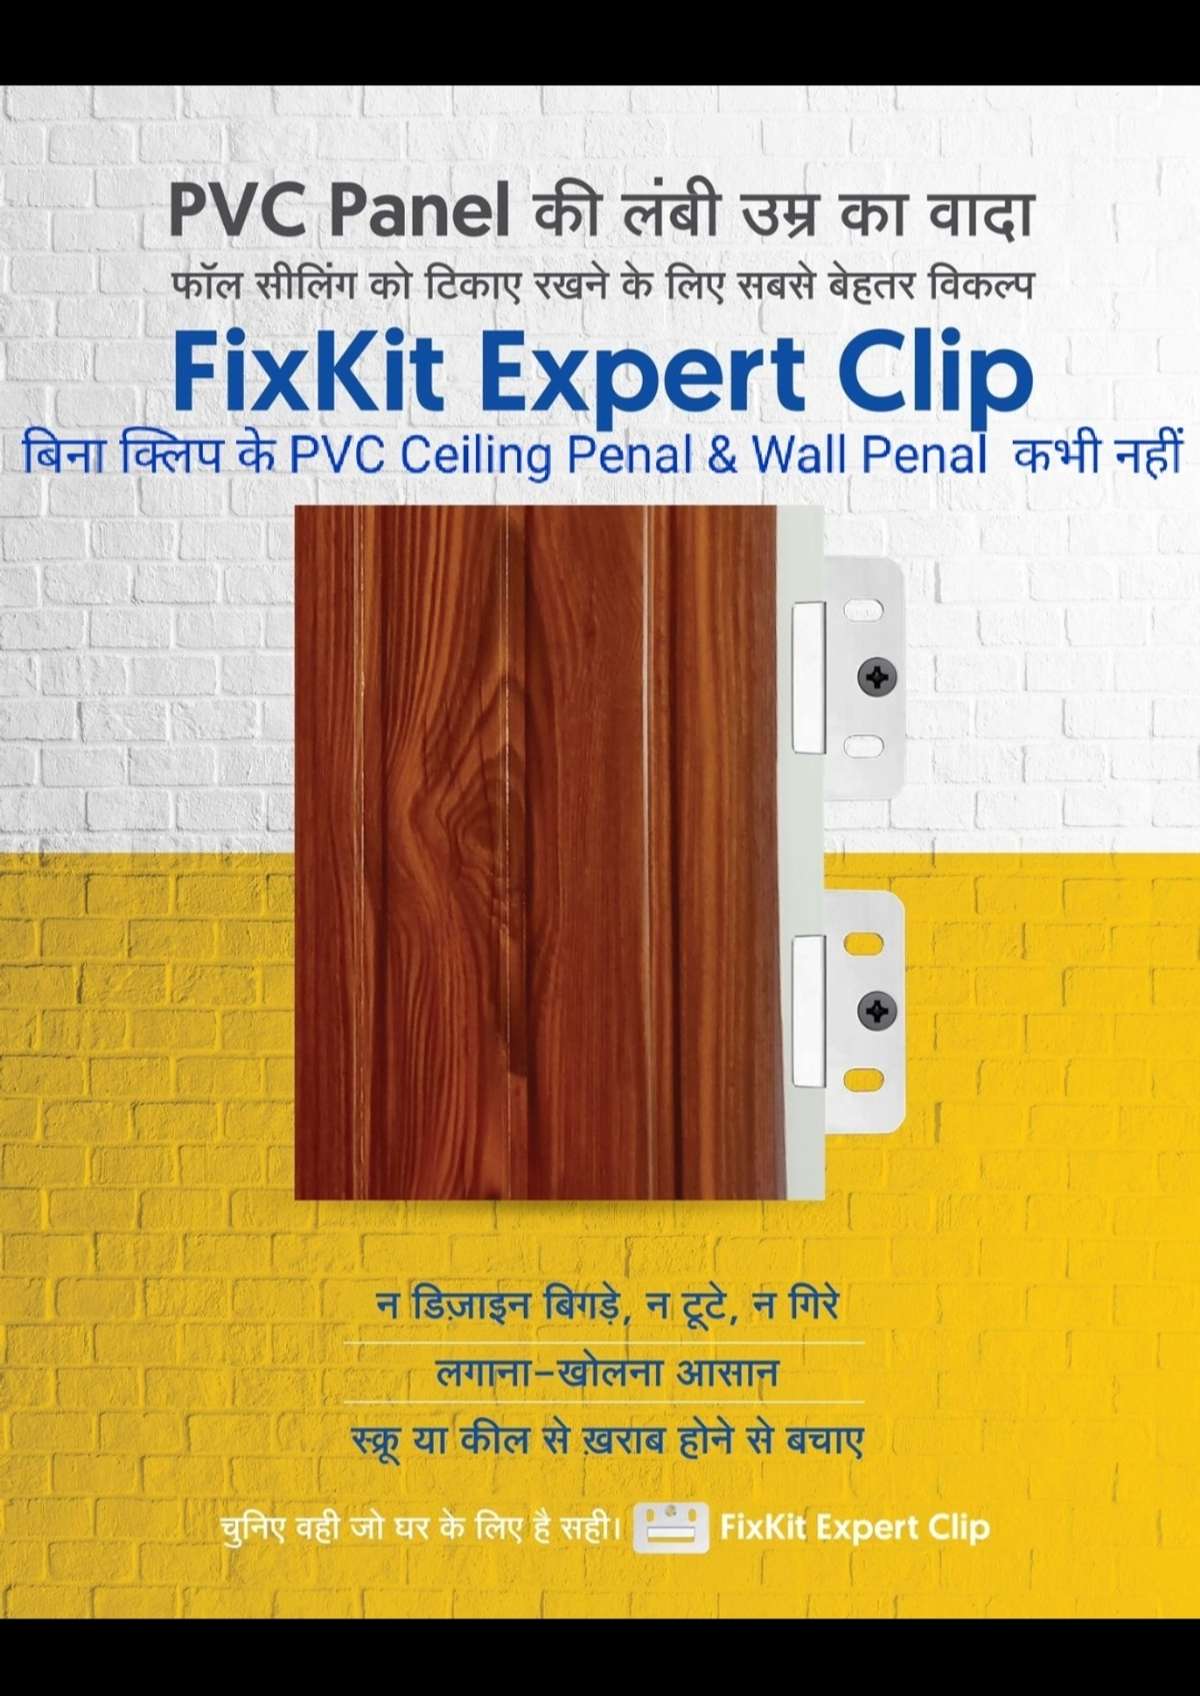 PVC Panel की उमर बढ़ाने का आसन तरीका आ गया आ गया  PVC PANEL Clip.xxxxxxxxxxxxxxxxxxxxxxxxxxxxxxxxxxxxxxxx          
PVC Panel  के लॉक को स्क्रू  और किल से खराब होने से बचाए
Expert Clip मदद से लगाना और खोलने मे आसान है FC